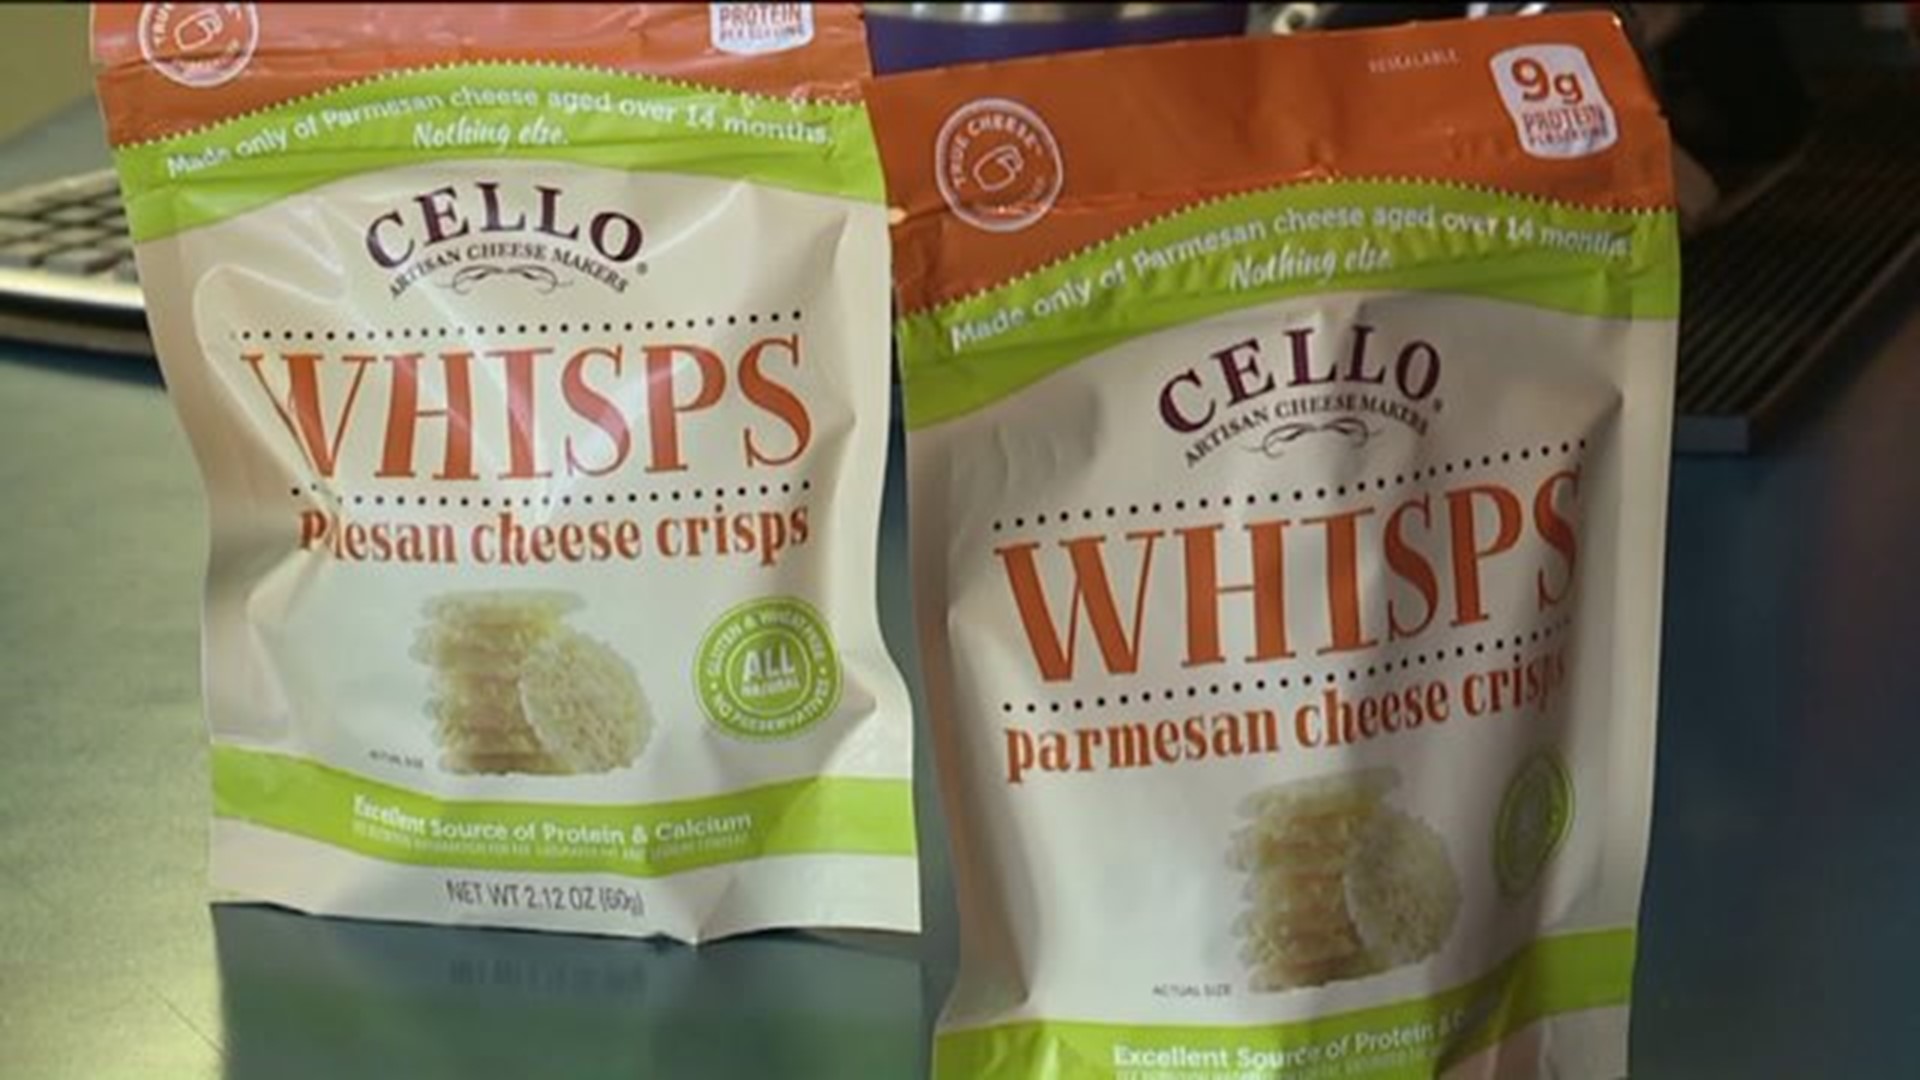 Taste Test: Cello Whisps Parmesan Cheese Crisps